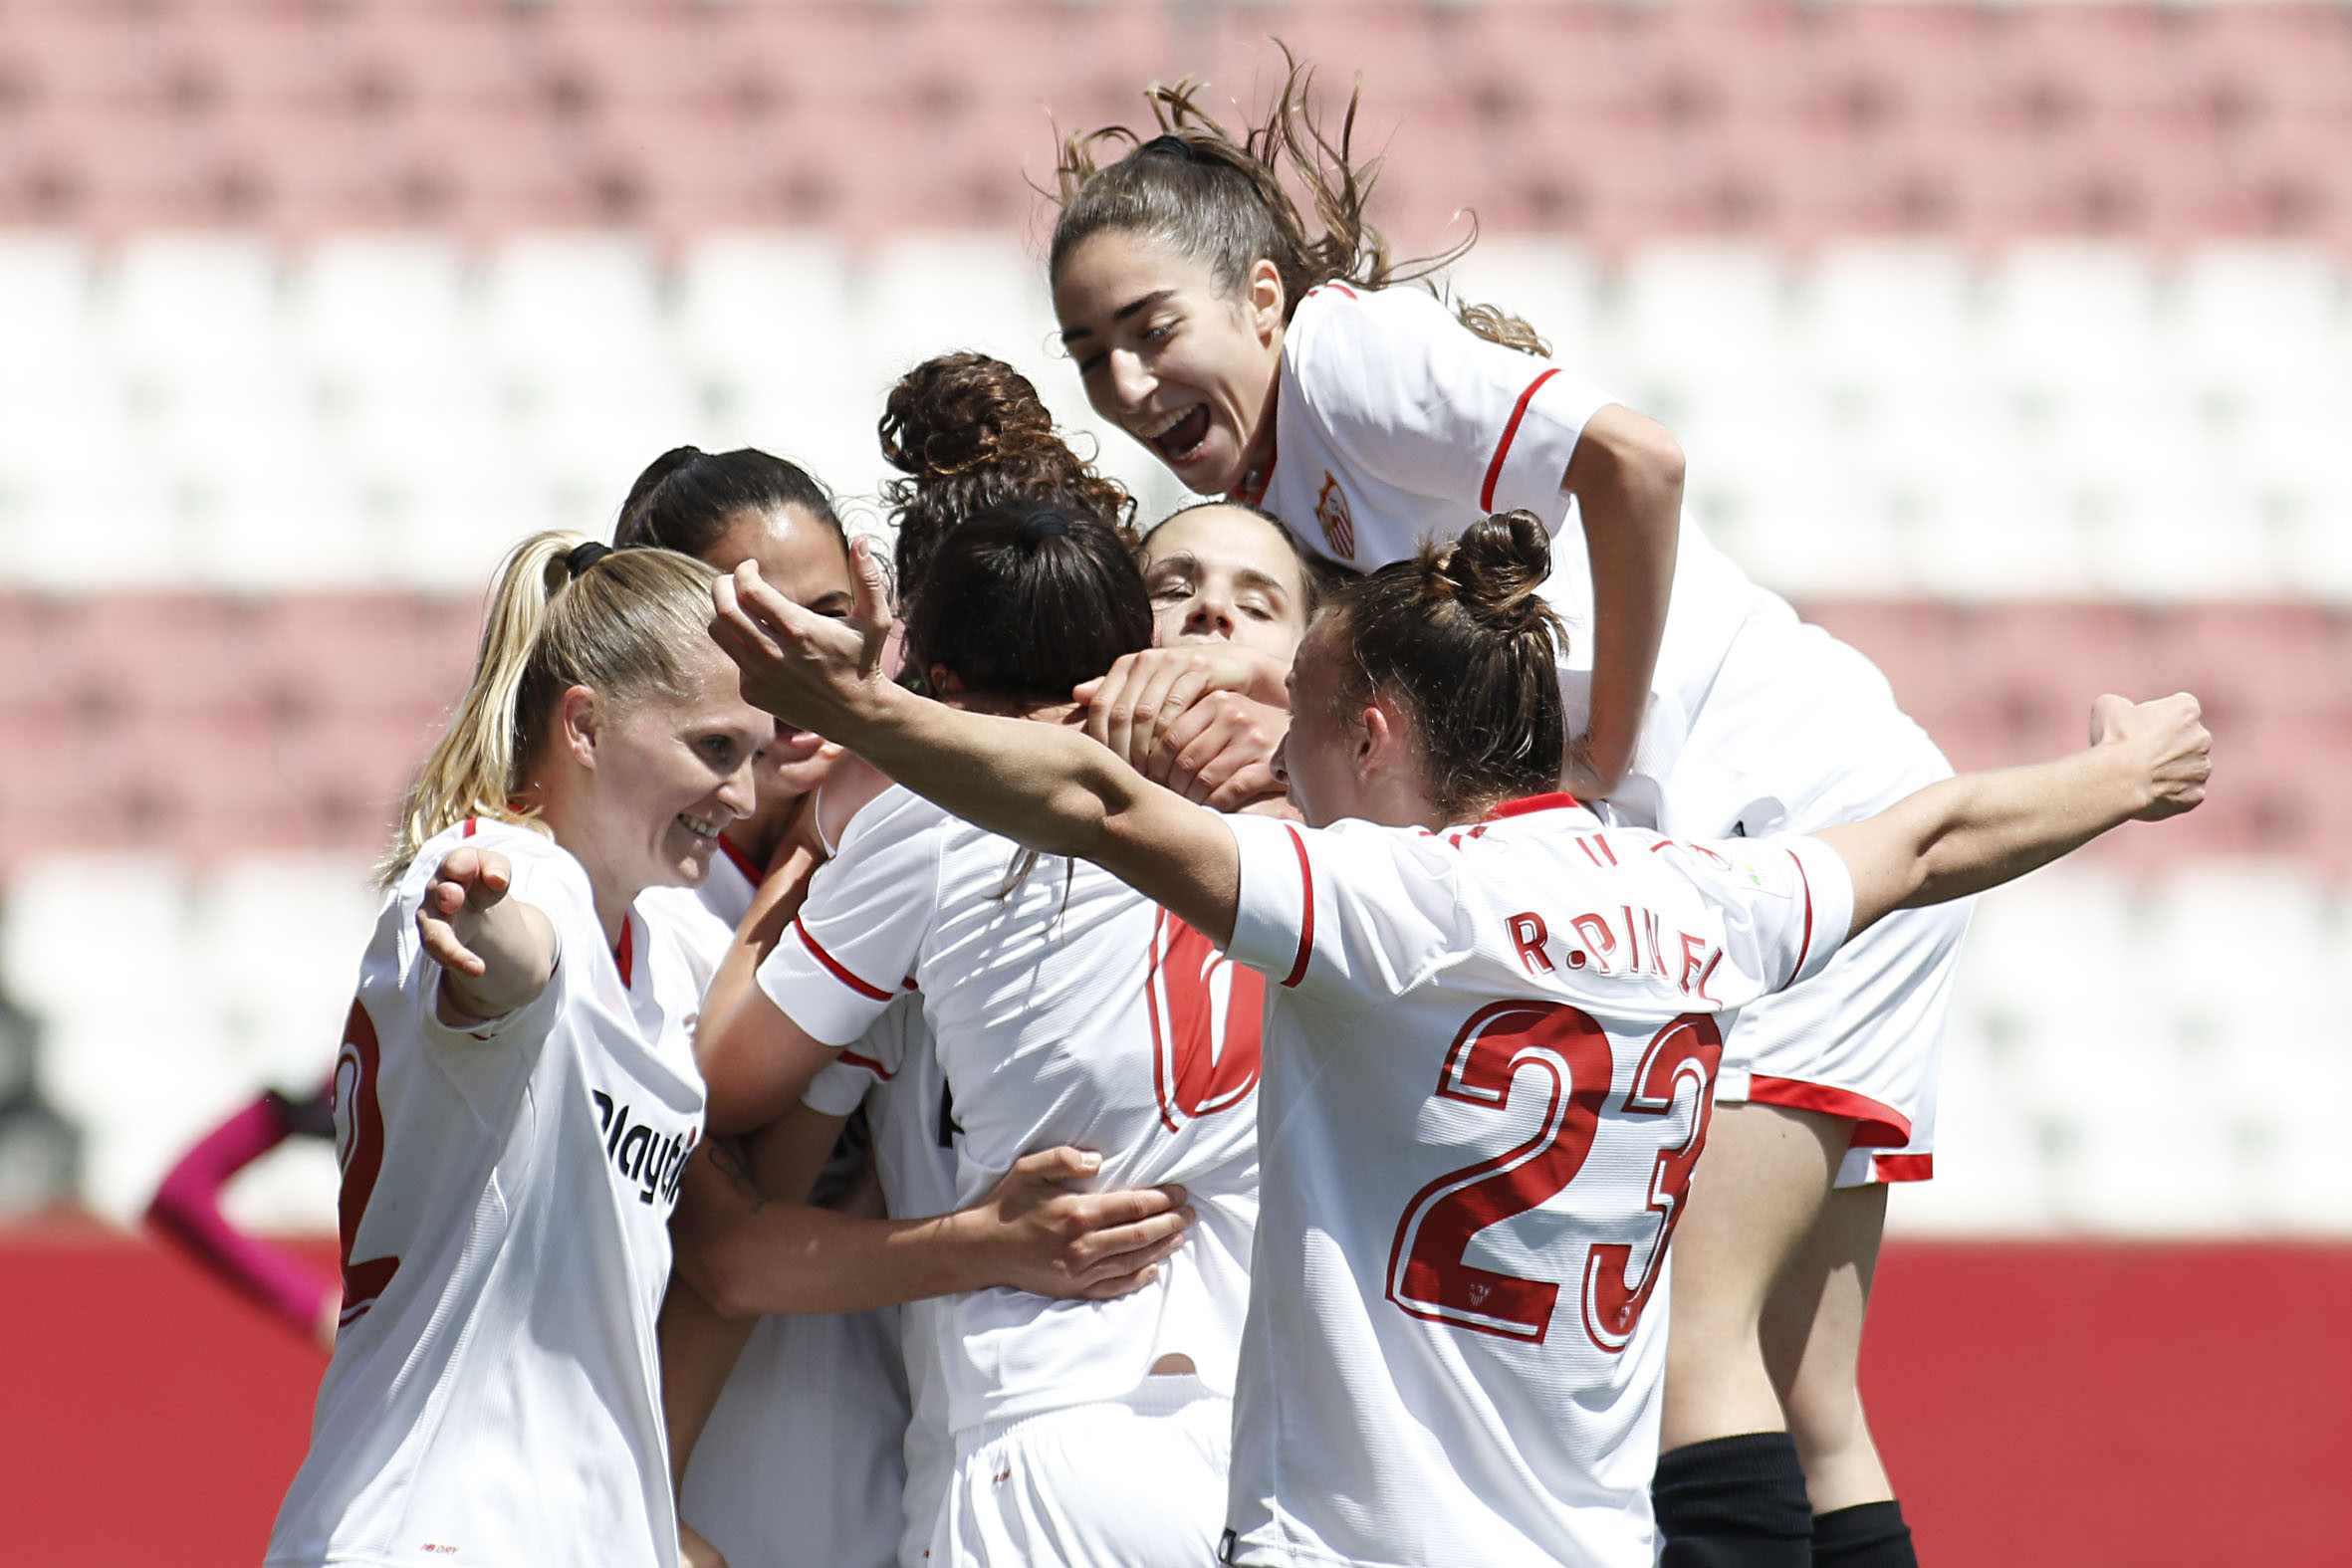 Celebración gol Sevilla FC femenino